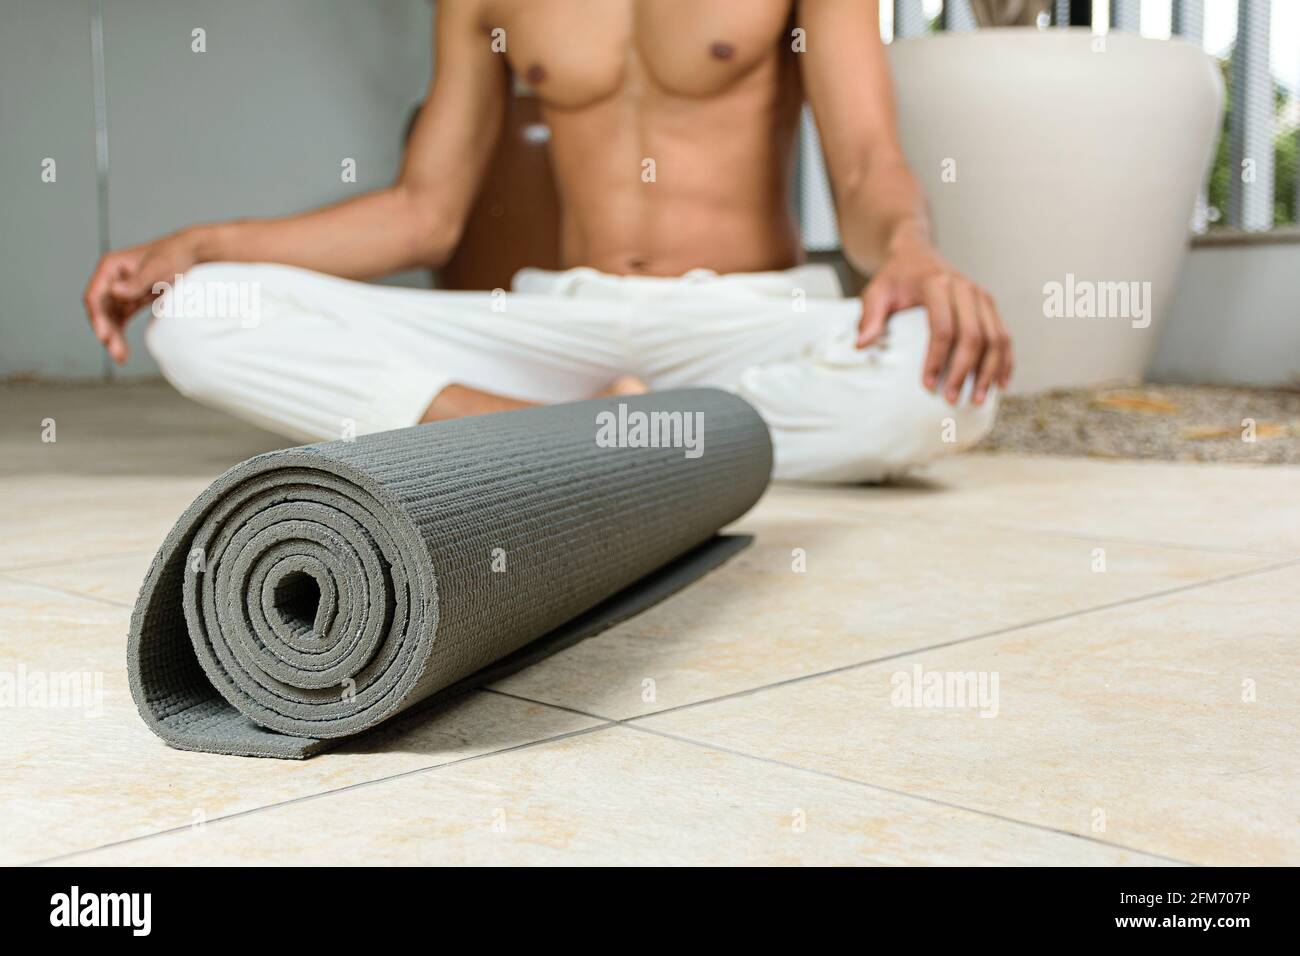 Esterilla de yoga rizado. En el fondo desenfocado, practicante de yoga sentado. Foto de stock